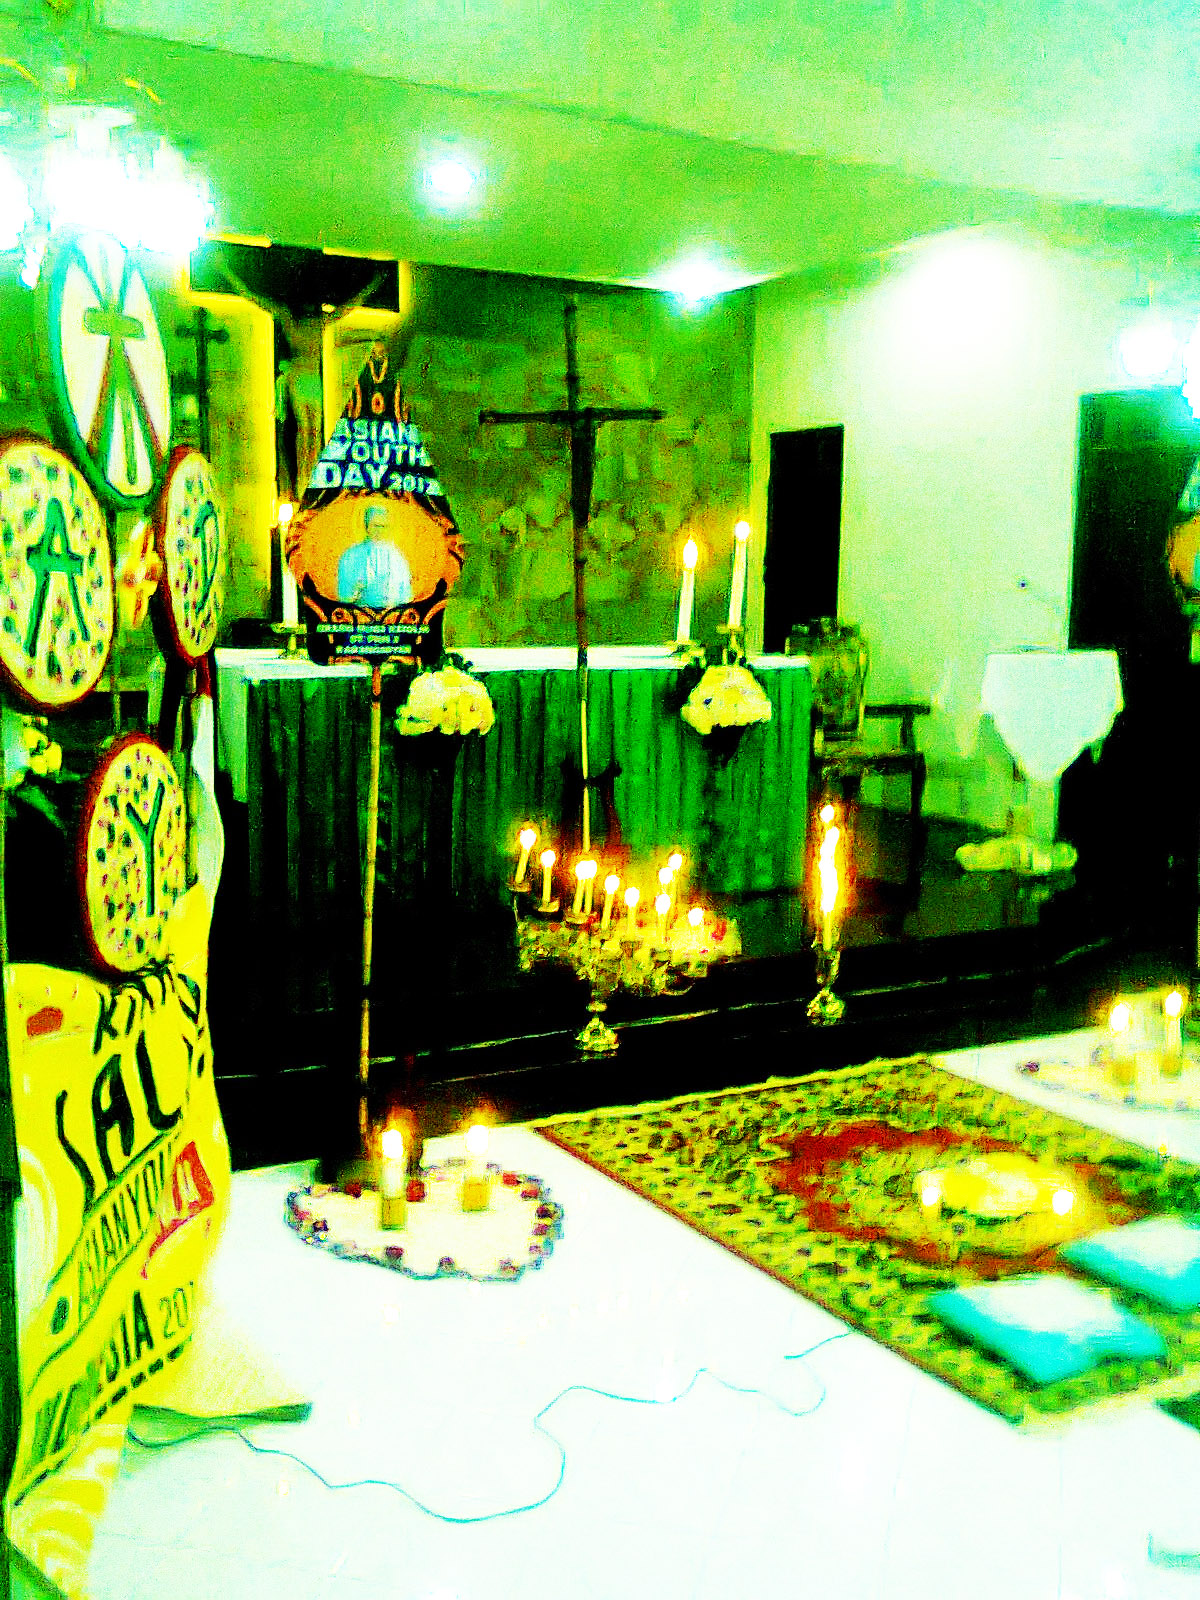 Salib Asian Youth Day singgah 1 malam di Kapel Tawangmangu